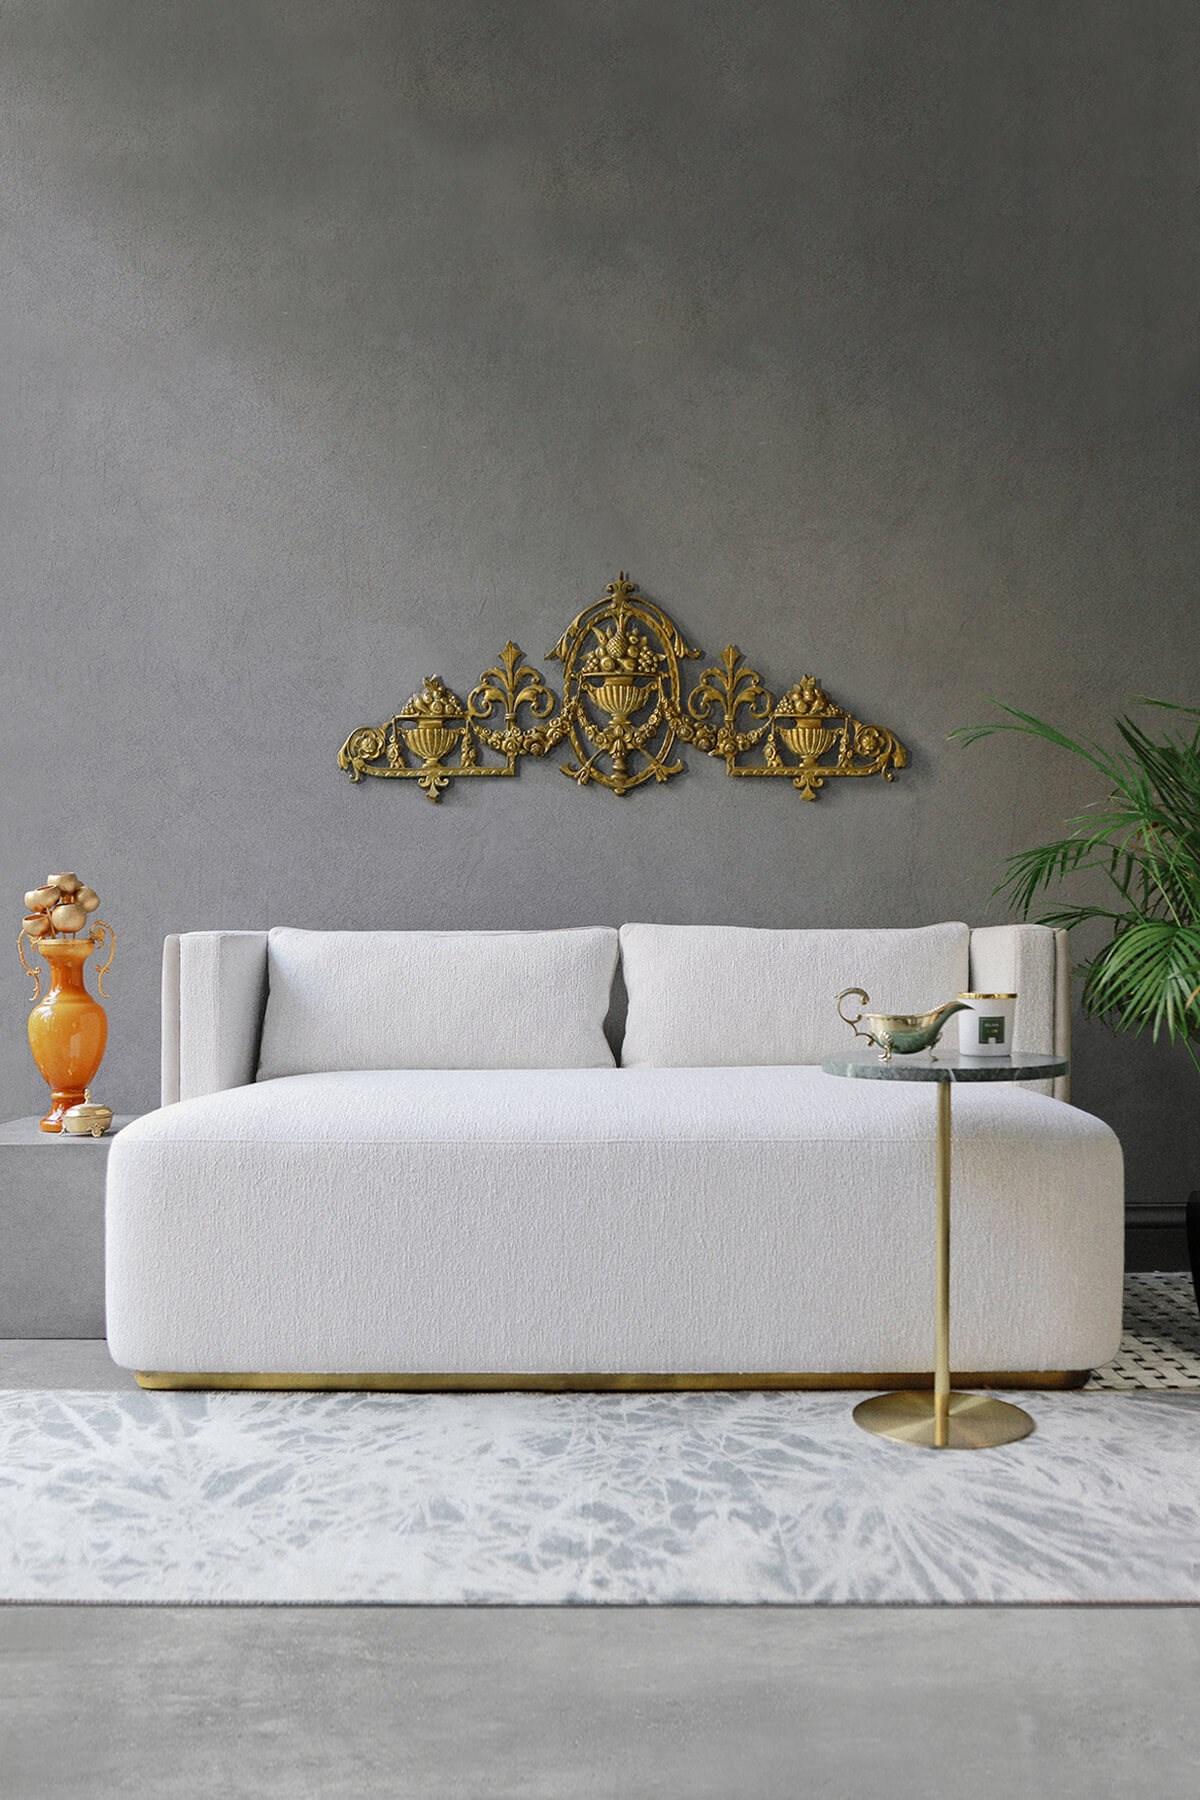 **VORLAUFZEIT 5 WOCHEN

Das Zweisitzer-Sofa Papillonne wurde entwickelt, um sowohl Form als auch Komfort zu maximieren und verleiht Ihrem Raum einen einzigartigen Stil.

Sie können verschiedene Stoffe für die Vorder- und Rückseite des Sofas